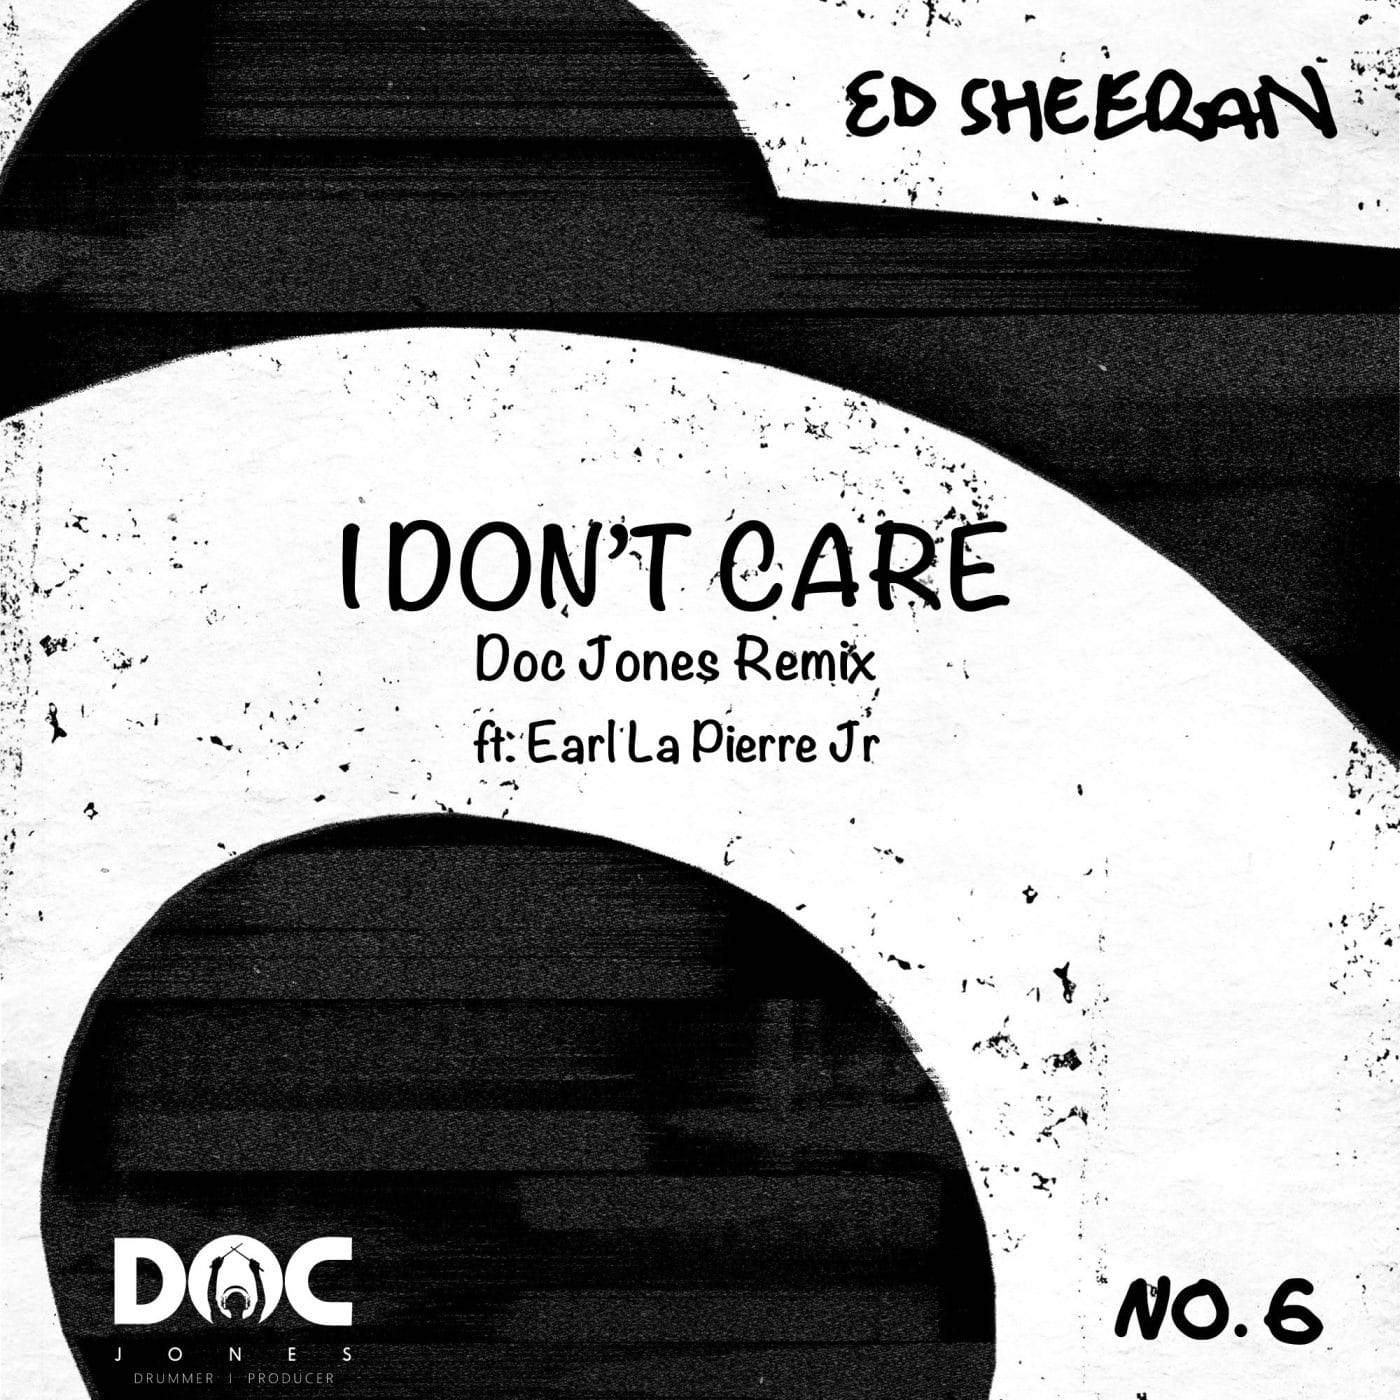 Ed Sheeran - I Dont Care - Doc Jones Remix ft. Earl La Pierre Jr